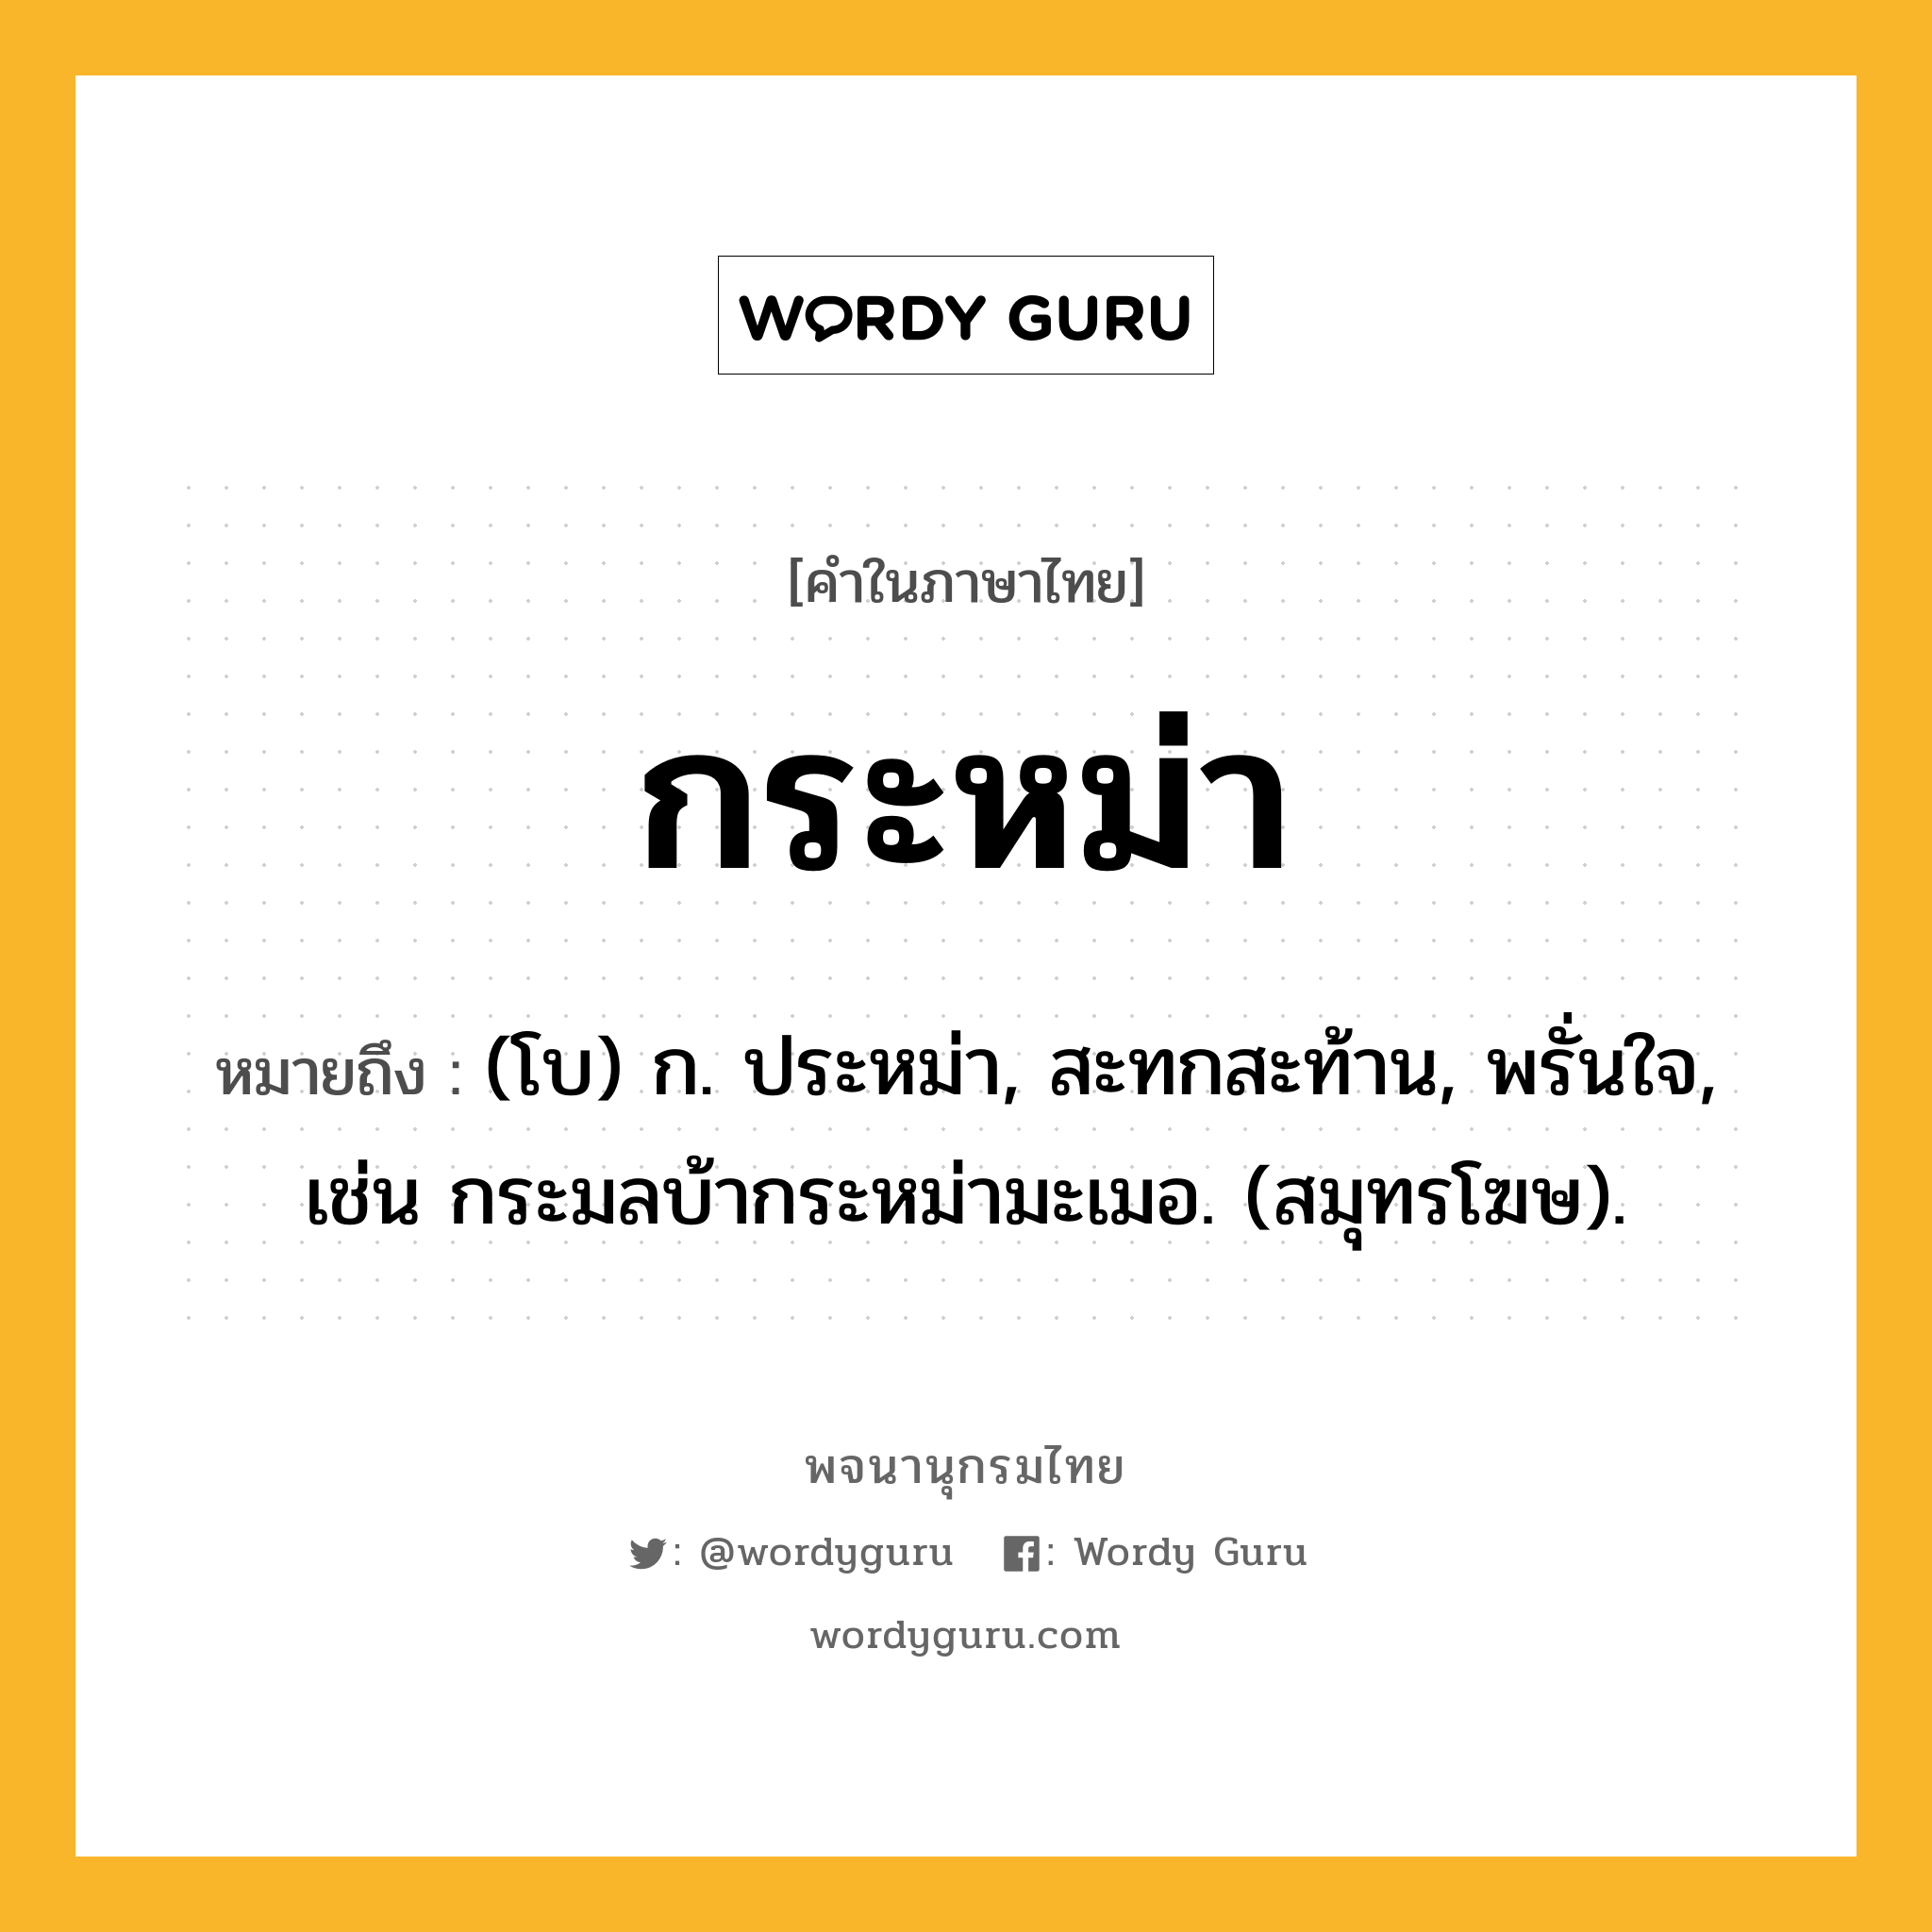 กระหม่า หมายถึงอะไร?, คำในภาษาไทย กระหม่า หมายถึง (โบ) ก. ประหม่า, สะทกสะท้าน, พรั่นใจ, เช่น กระมลบ้ากระหม่ามะเมอ. (สมุทรโฆษ).